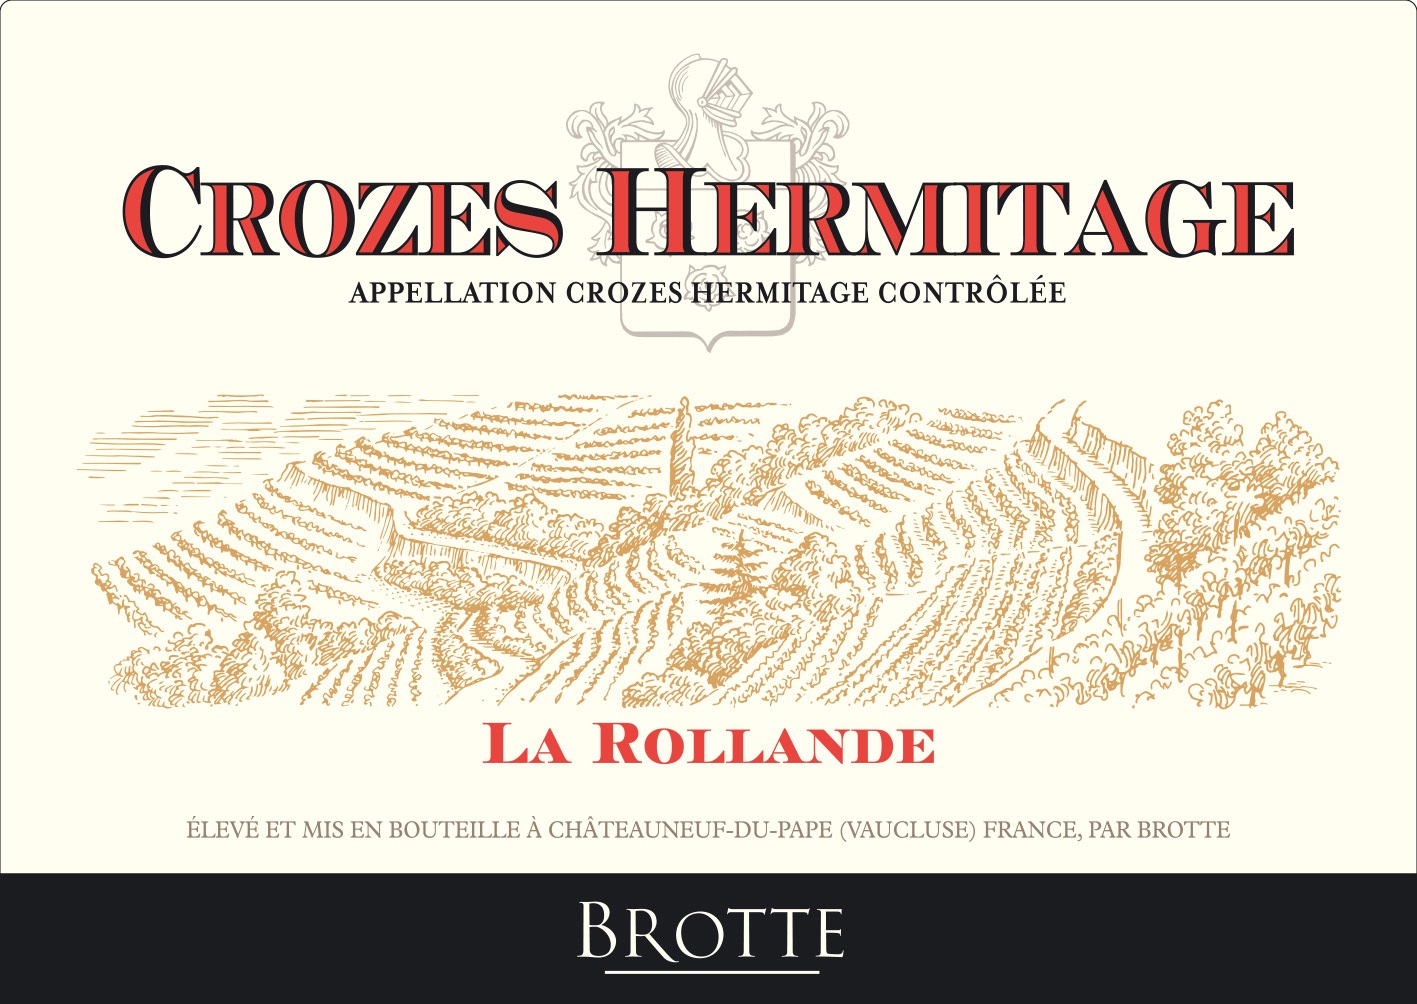 Brotte - La Rollande Crozes Hermitage label